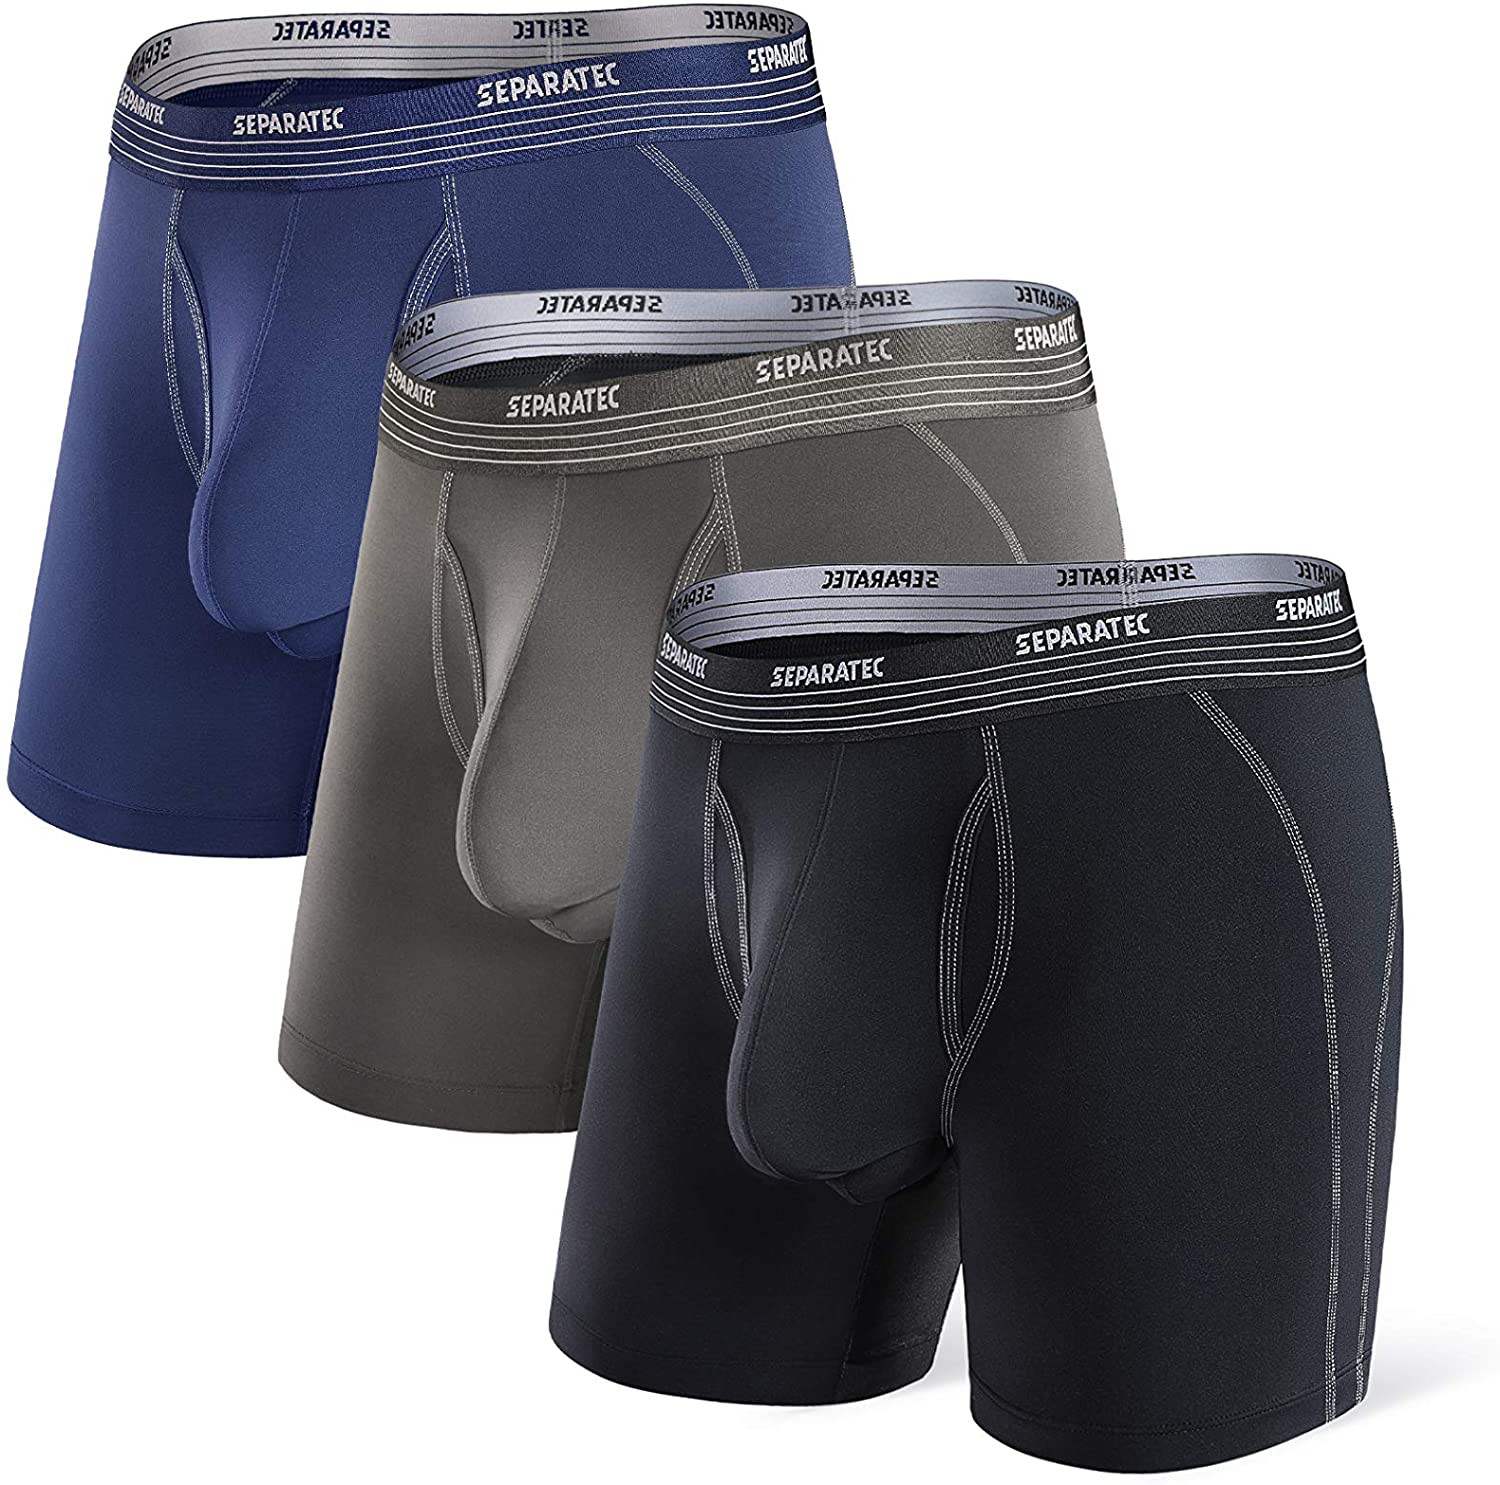 separatec #dualpouch men's #underwear review 🩲🚀#winteroutfit